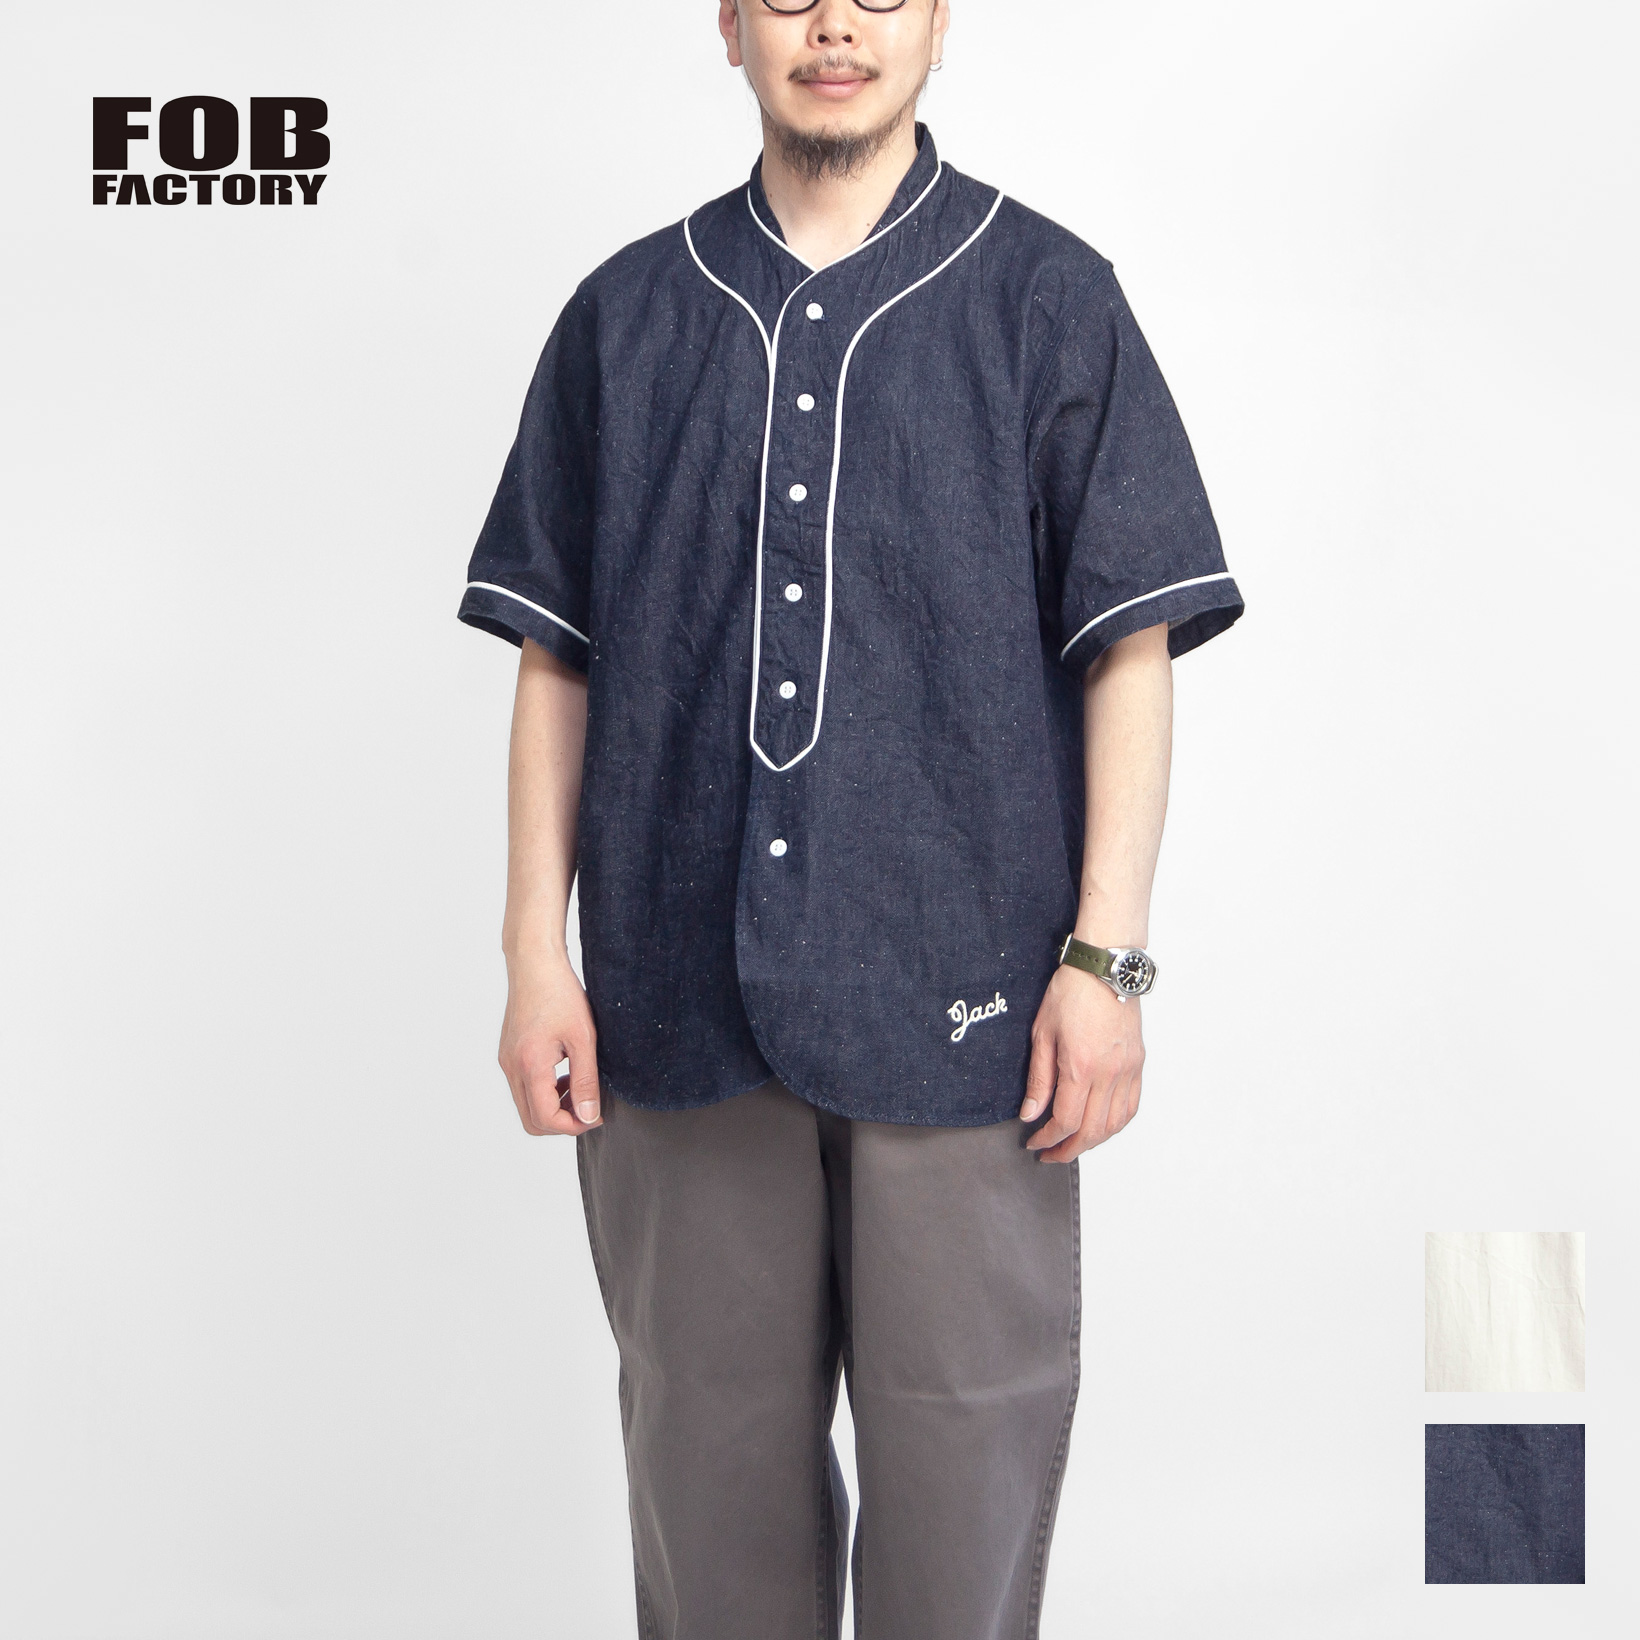 FOBファクトリー FOB FACTORY 綿麻デニム ベースボールシャツ 日本製